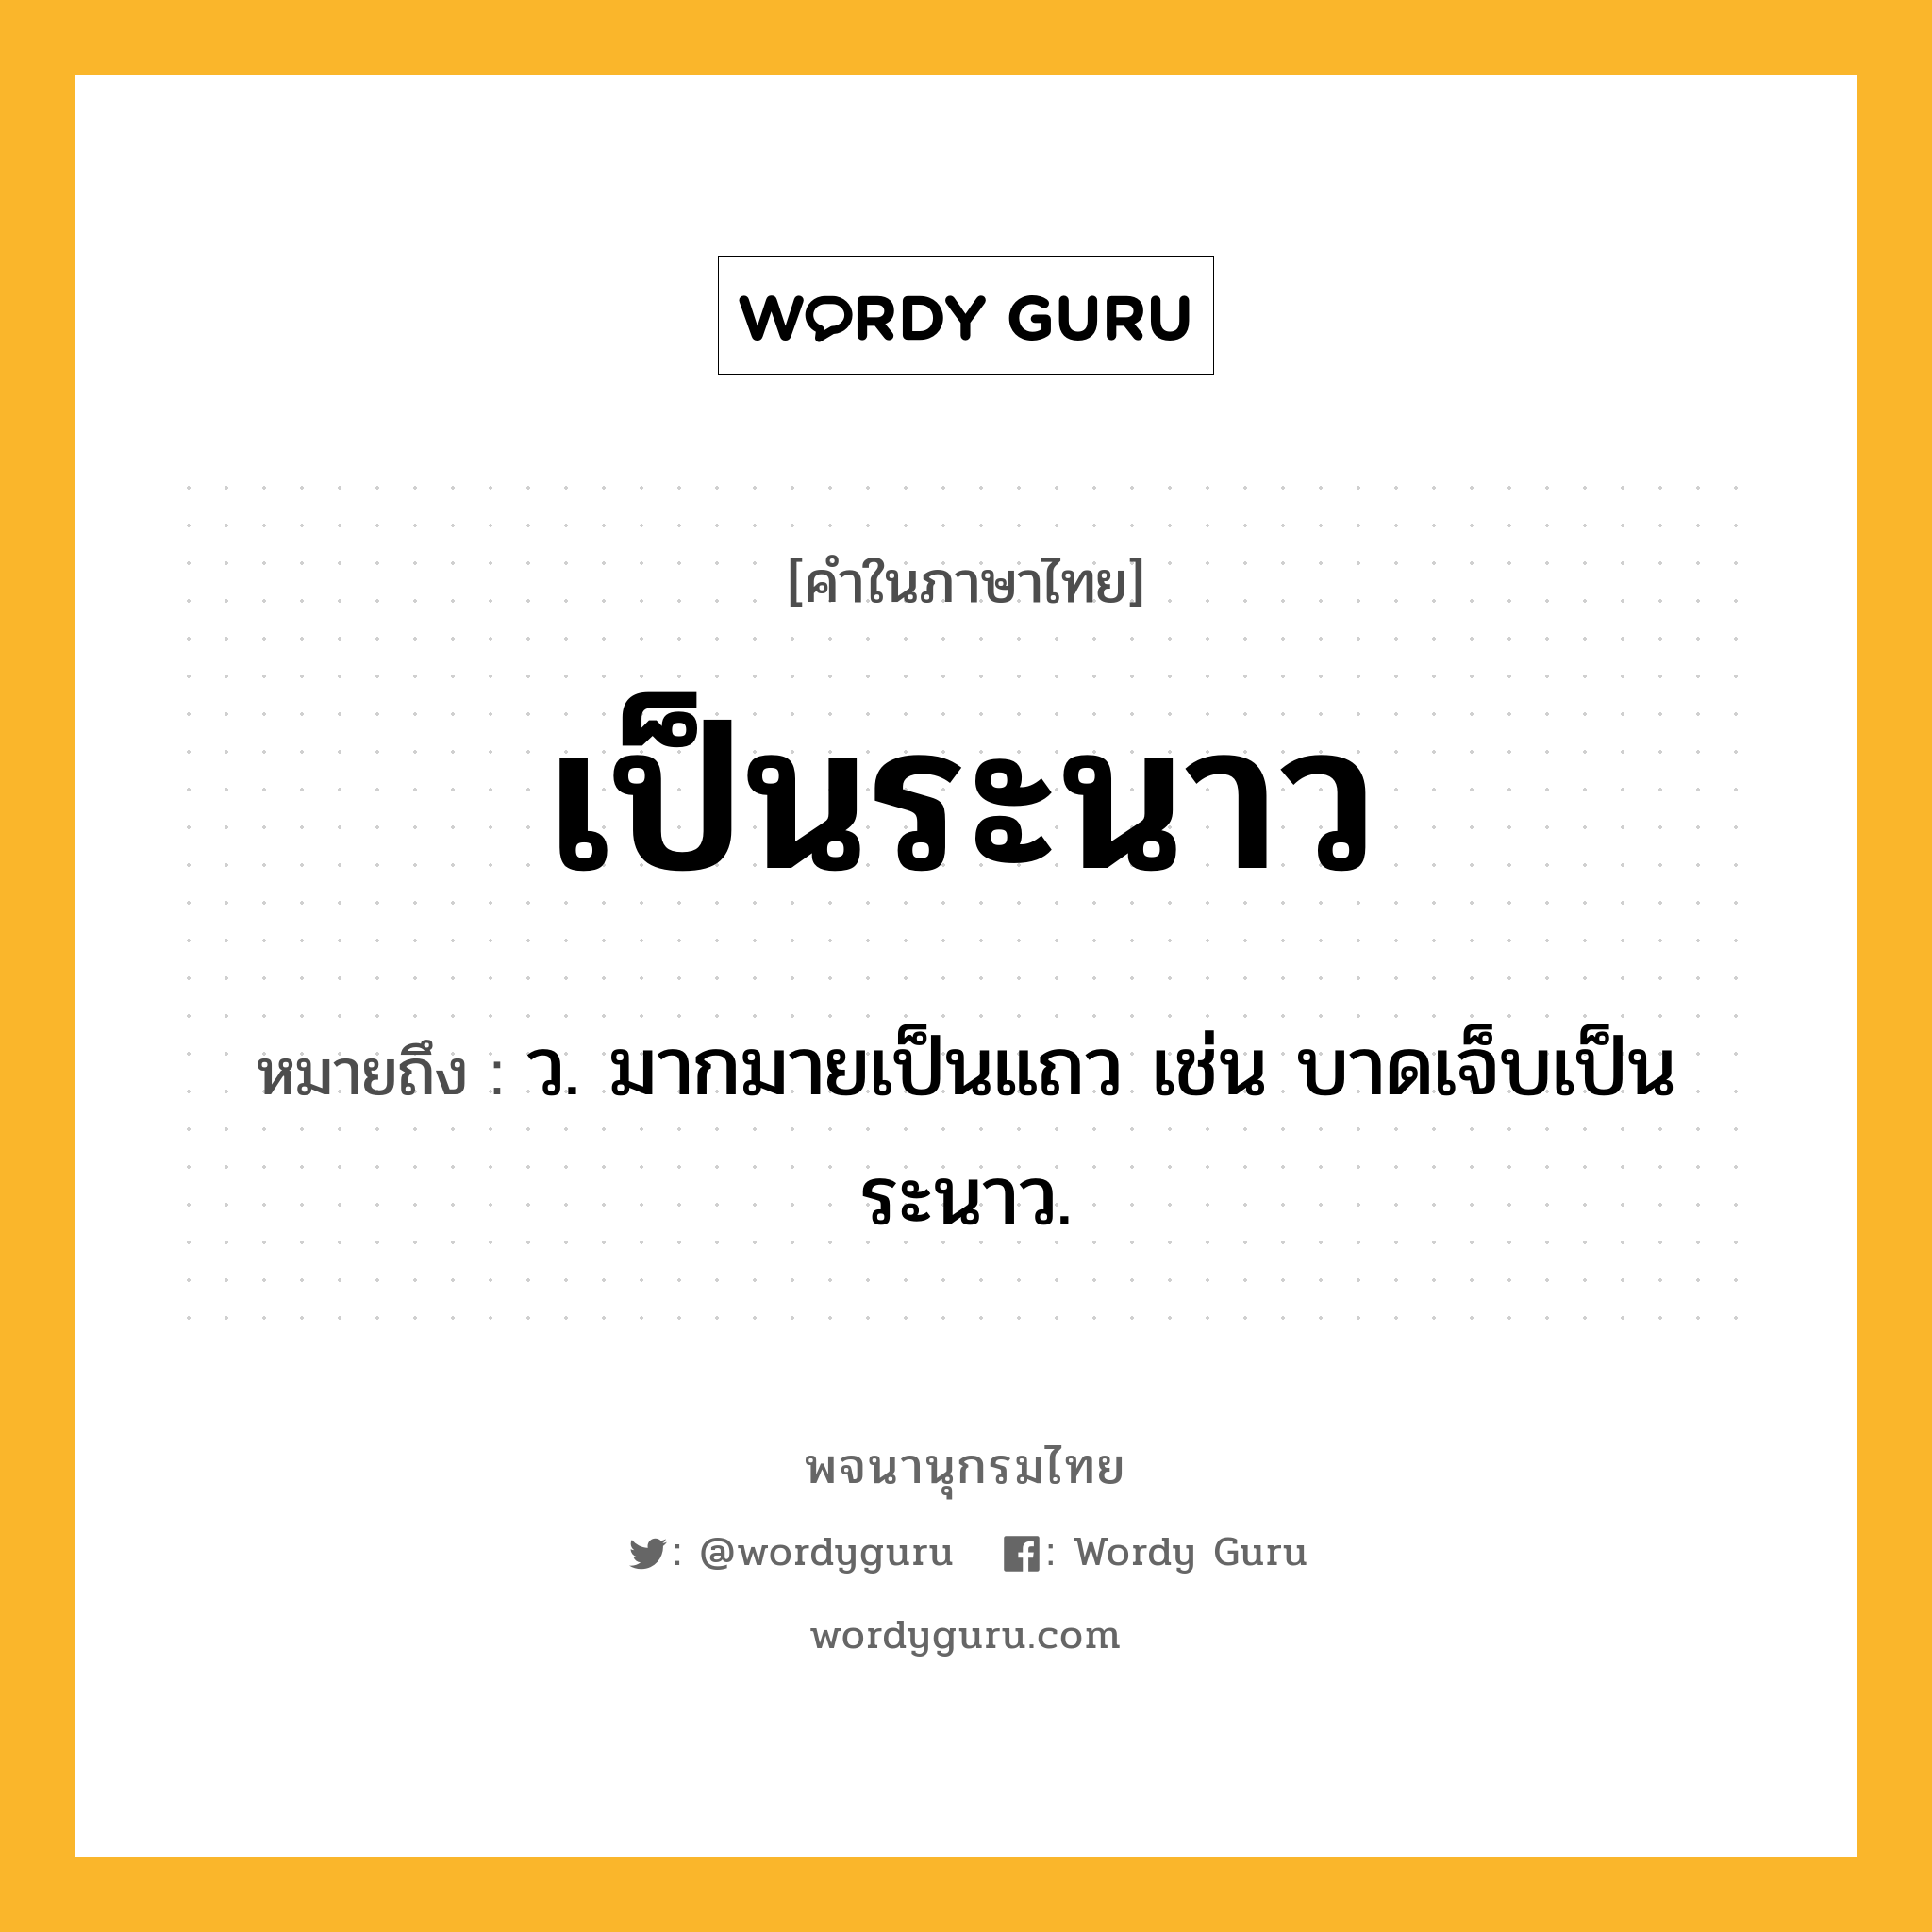 เป็นระนาว ความหมาย หมายถึงอะไร?, คำในภาษาไทย เป็นระนาว หมายถึง ว. มากมายเป็นแถว เช่น บาดเจ็บเป็นระนาว.